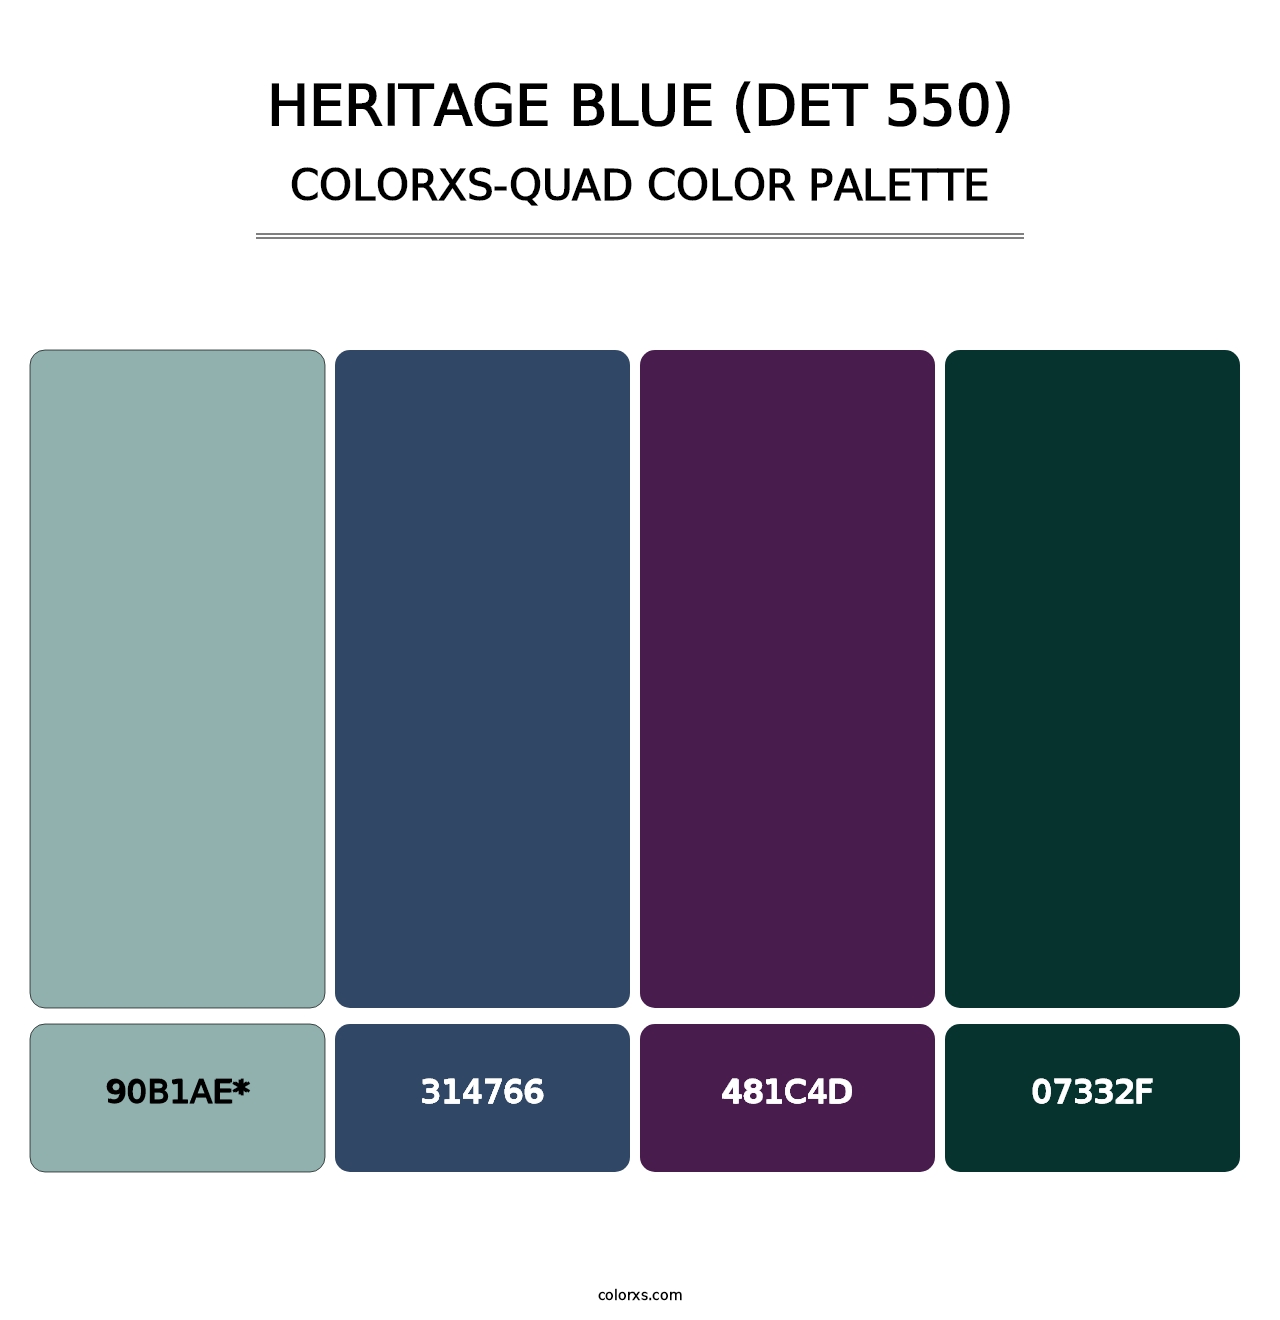 Heritage Blue (DET 550) - Colorxs Quad Palette